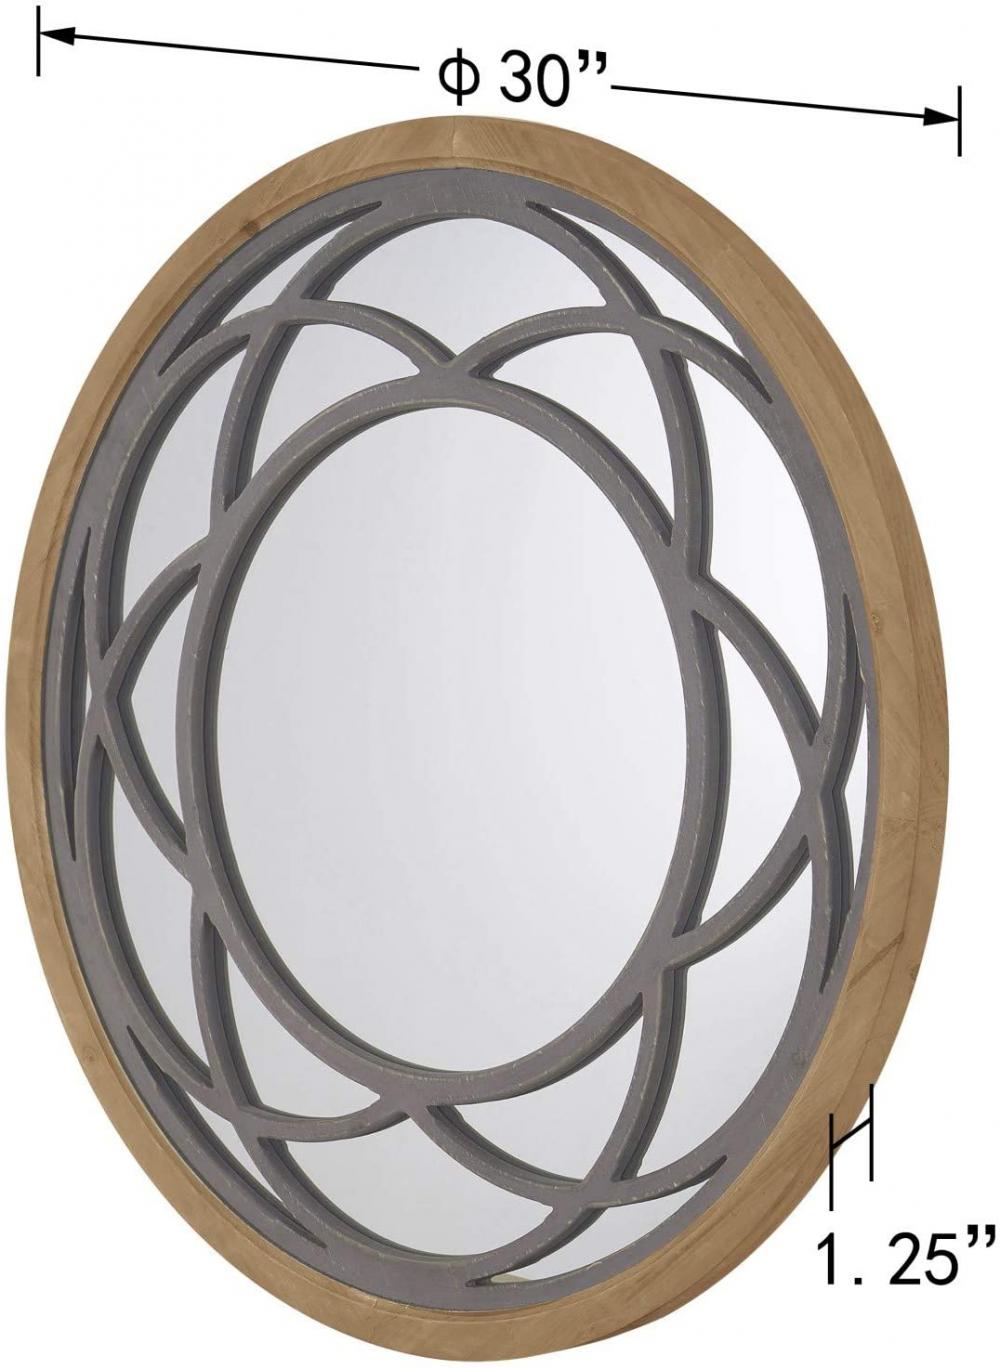 Espelho de parede decorativo redondo rústico